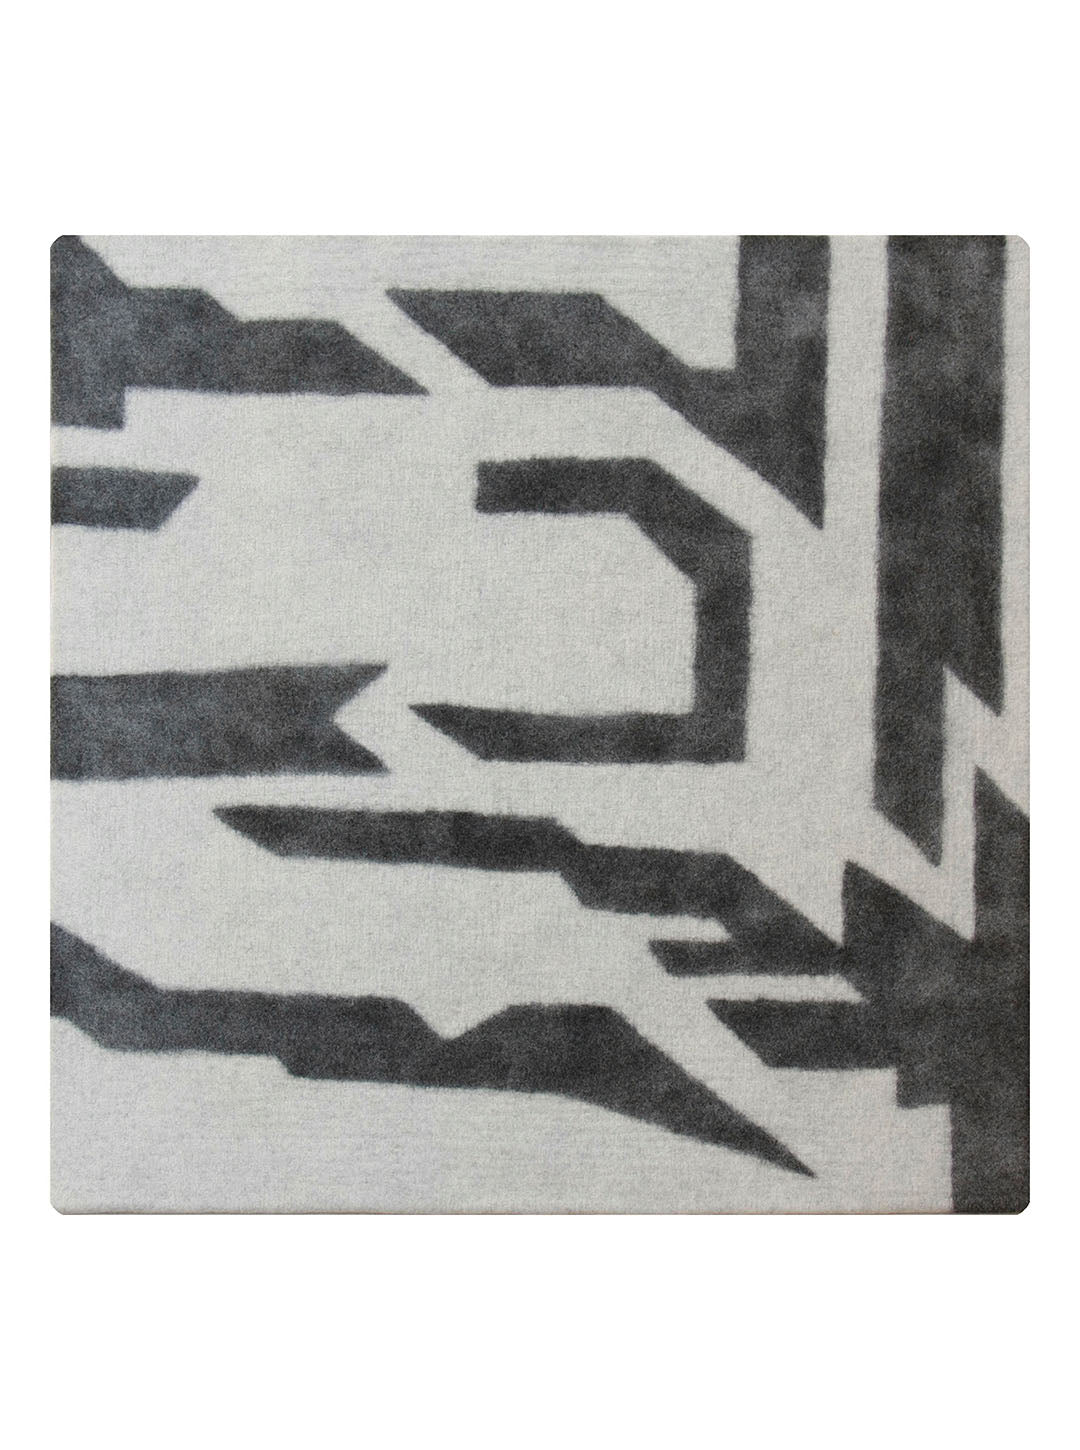 Leeway rug 7'x7'